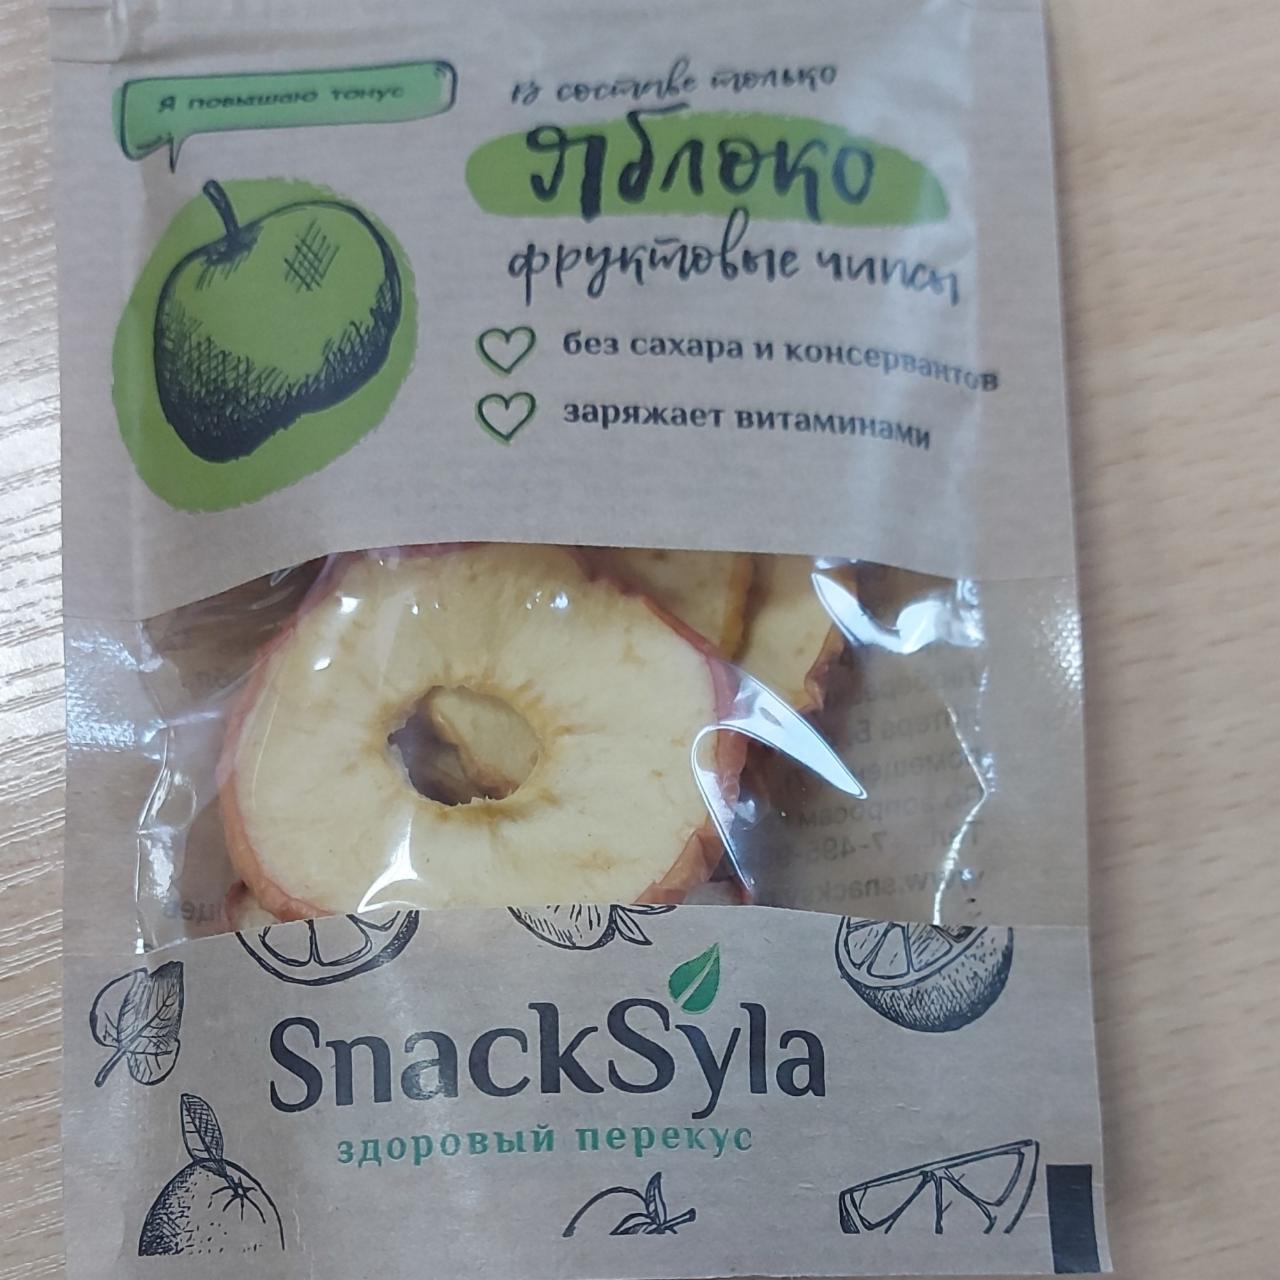 Фото - Яблочные чипсы Здоровый перекус SnackSyla